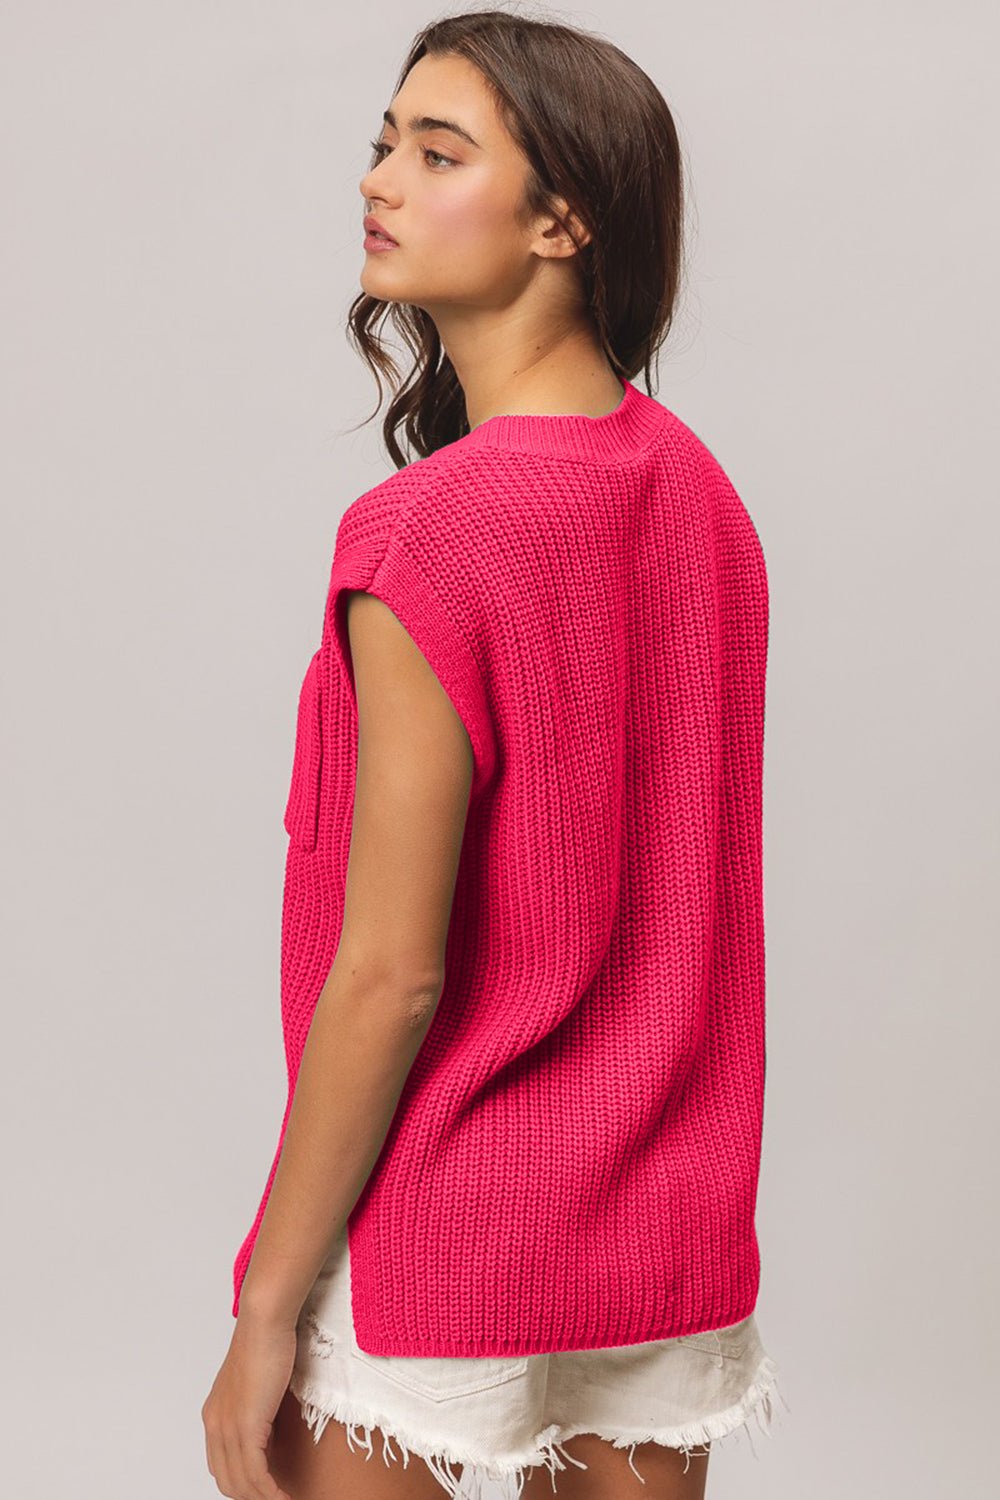 Cap Sleeve Sweater in FuchsiaSweaterBiBi